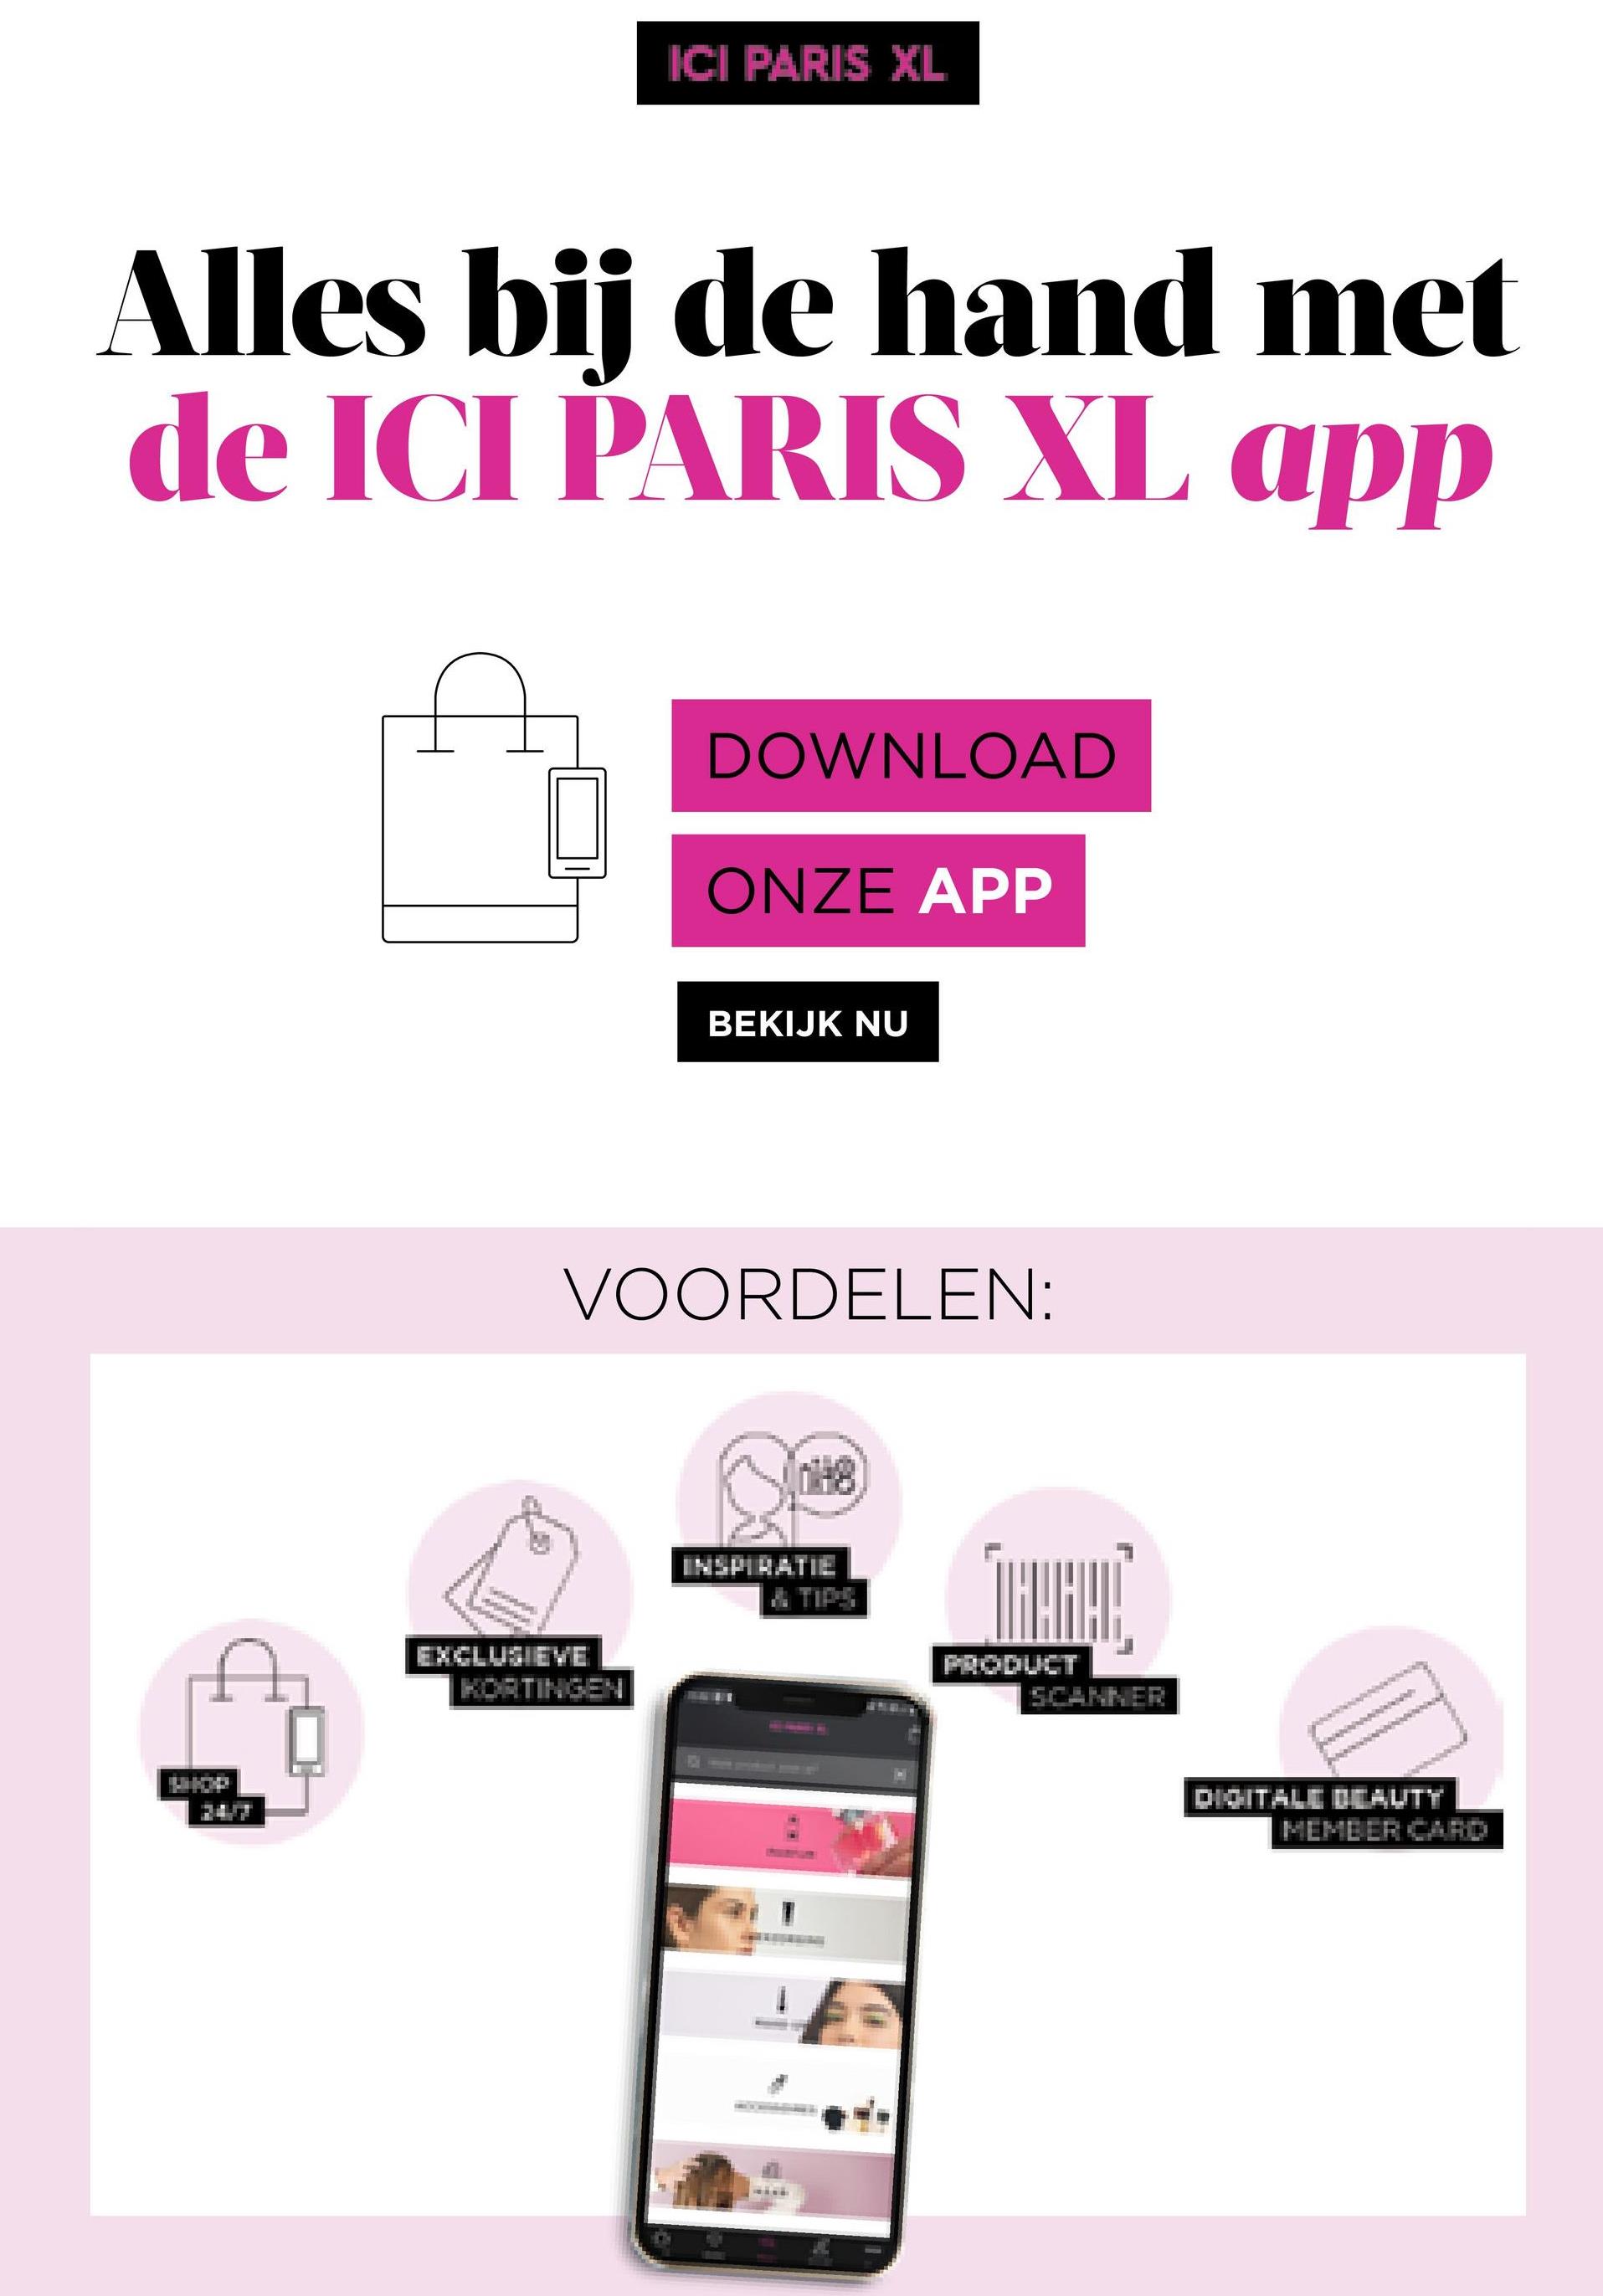 ICI PARIS XL
Alles bij de hand met
de ICI PARIS XL app
DOWNLOAD
ONZE APP
BEKIJK NU
VOORDELEN:
INSPIRATIE
TALARI
EXCLUSIEVE
KOETINGEN
PRODUCT
DIGITALE BEAUTY
MEME ER CHAD
